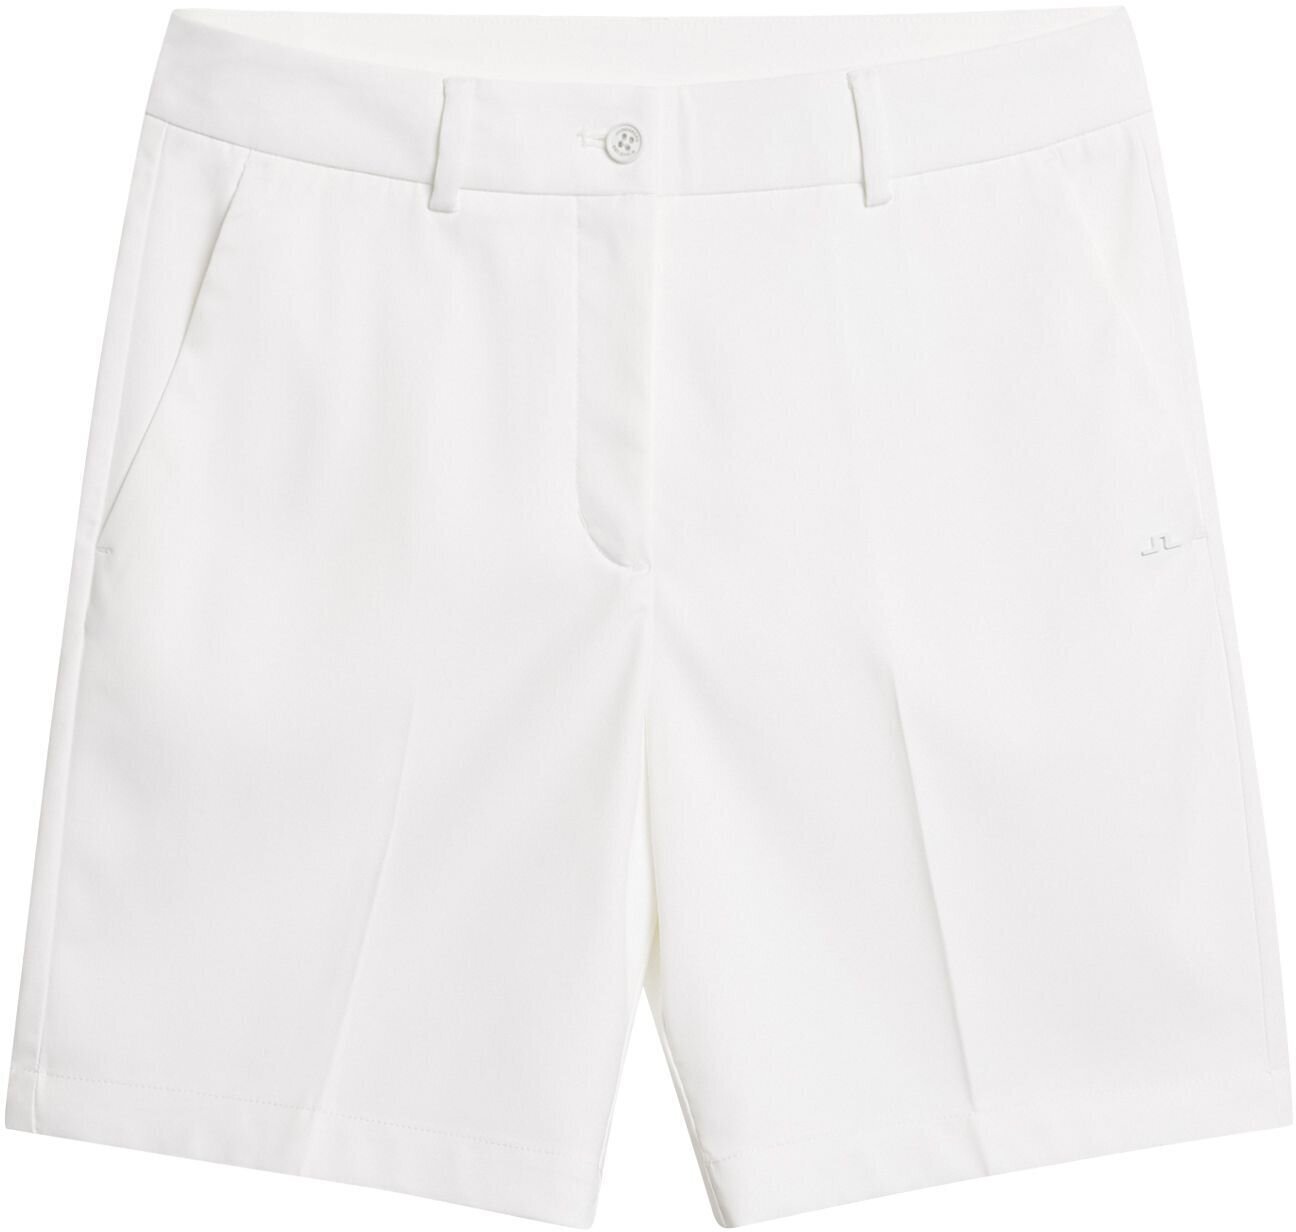 Sort J.Lindeberg Gwen Long Shorts White 29